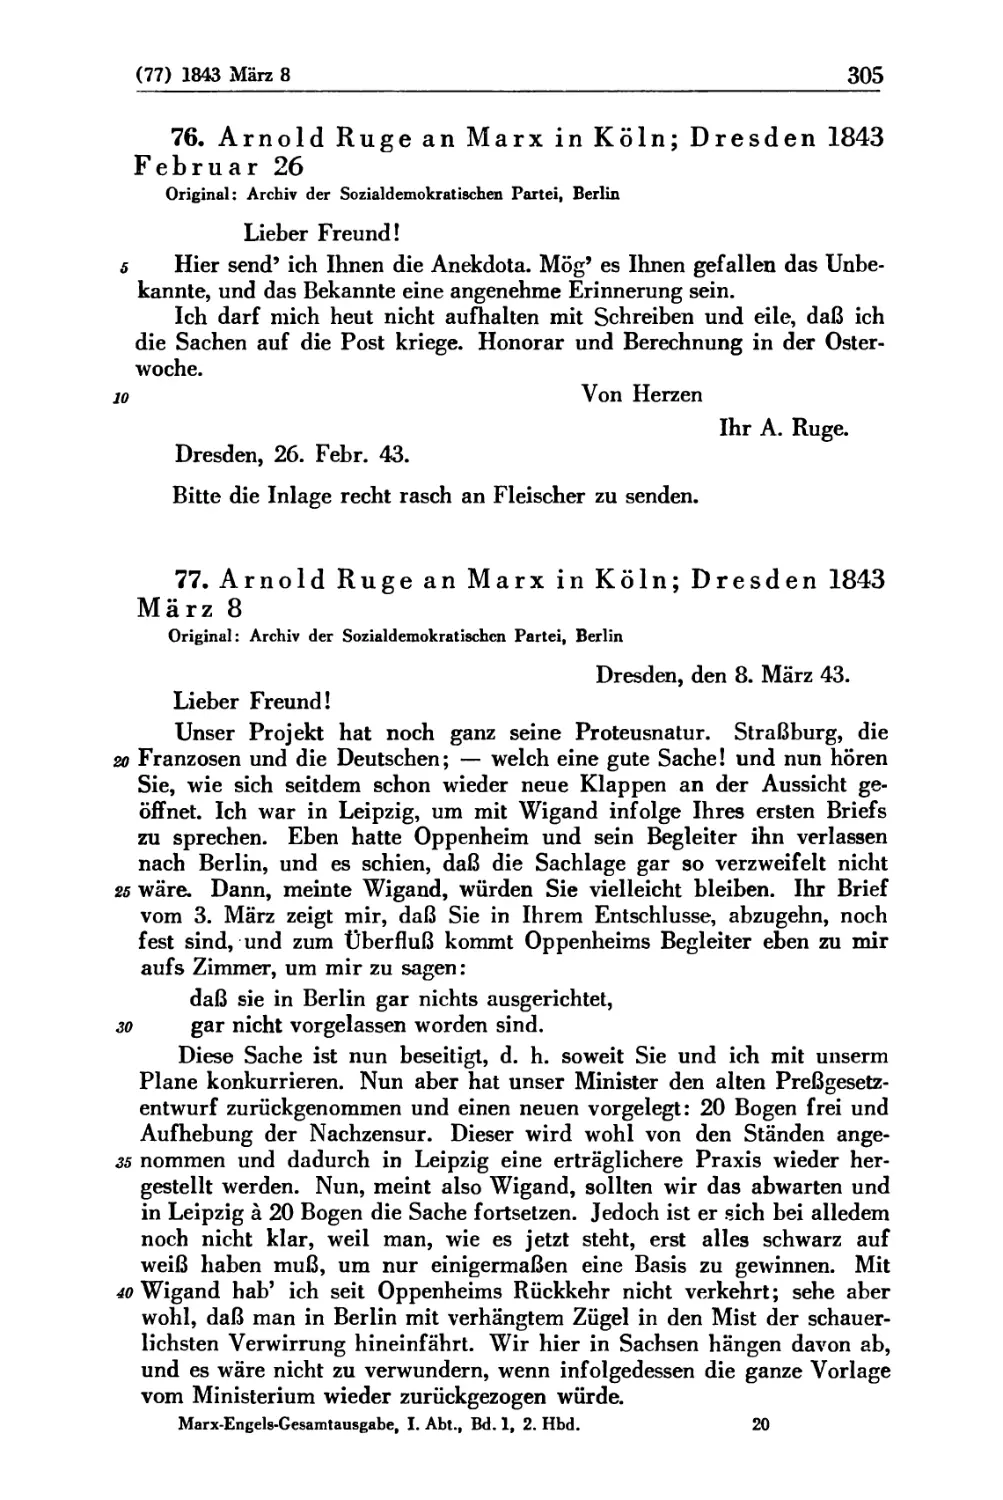 76. Arnold Ruge an Marx in Köln; Dresden 1843 Februar 26
77. Arnold Ruge an Marx in Köln; Dresden 1843 März 8